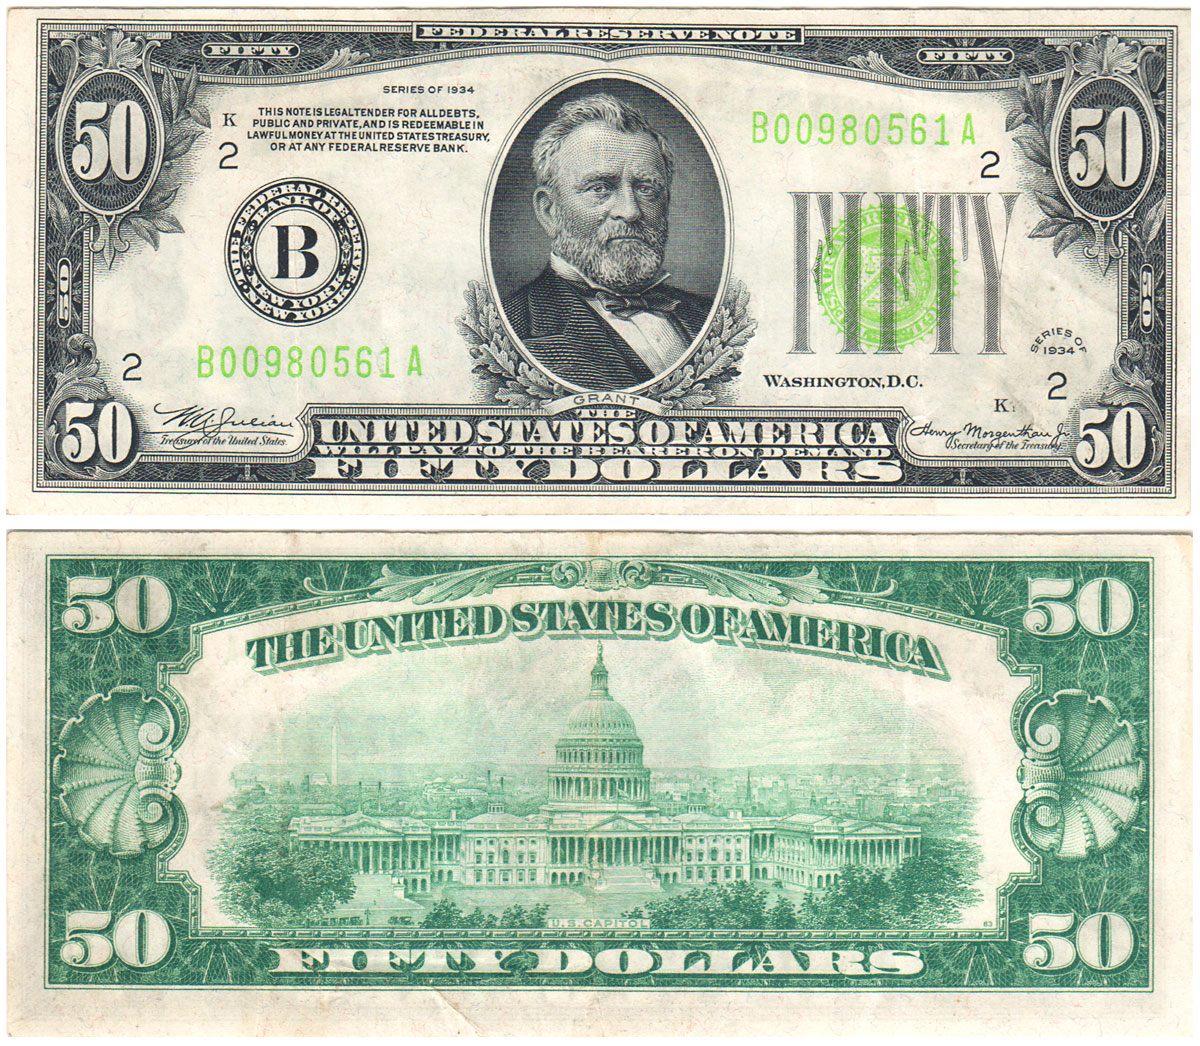 1934 $10 dollar bill serial number lookup